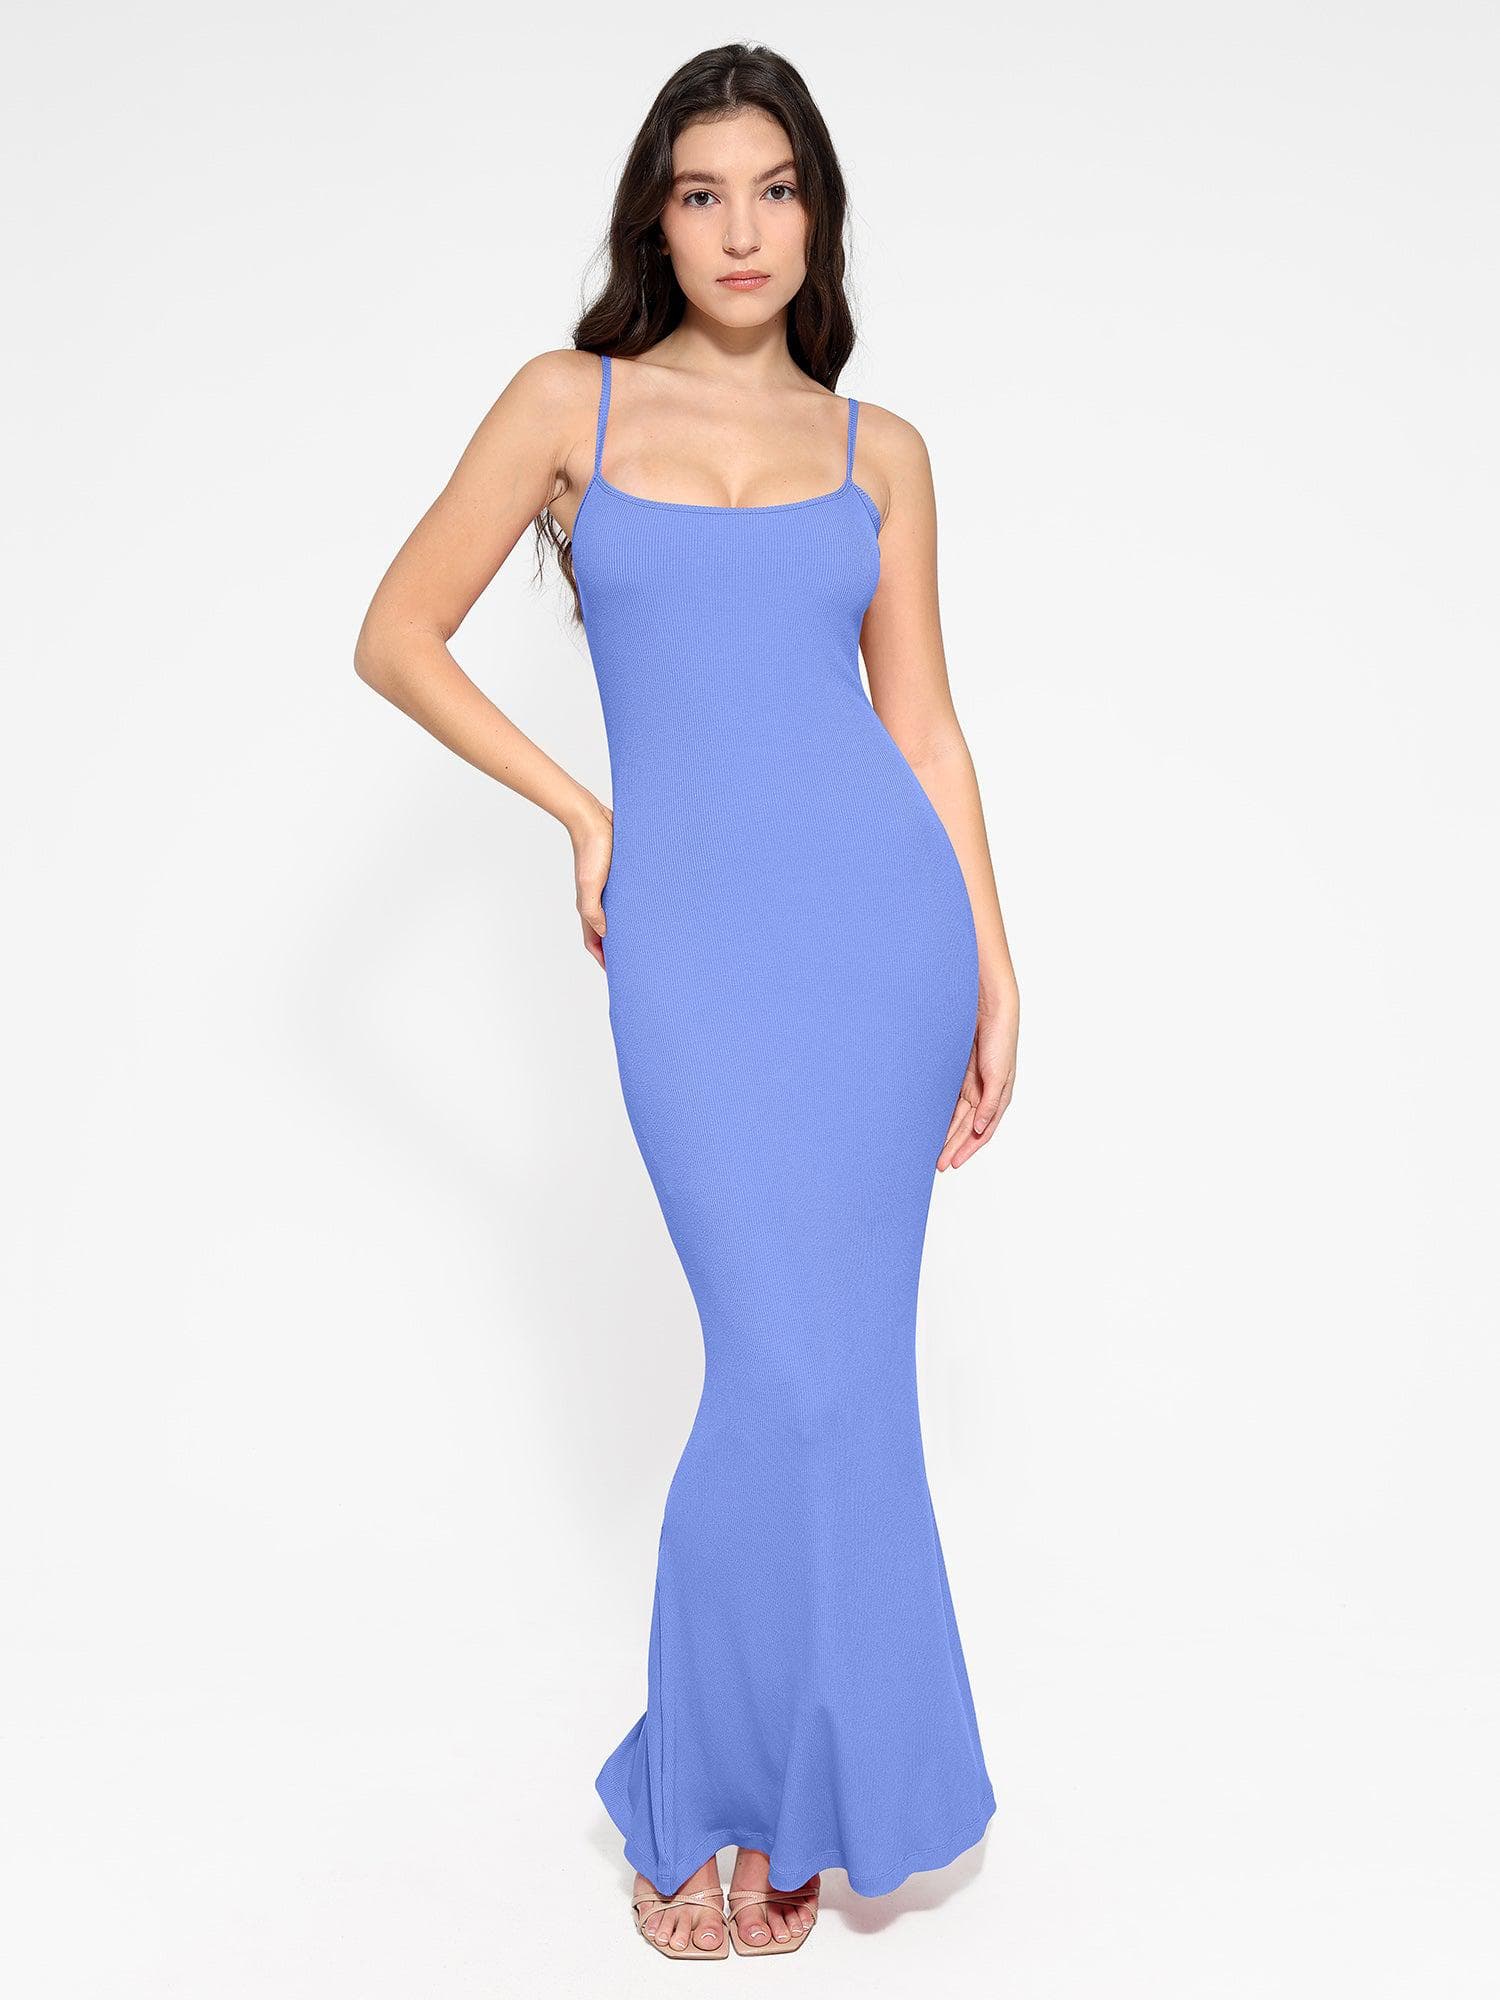 Popilush® Shaping Slip Dress Light Blue / XS The Shapewear Dress Slip Maxi